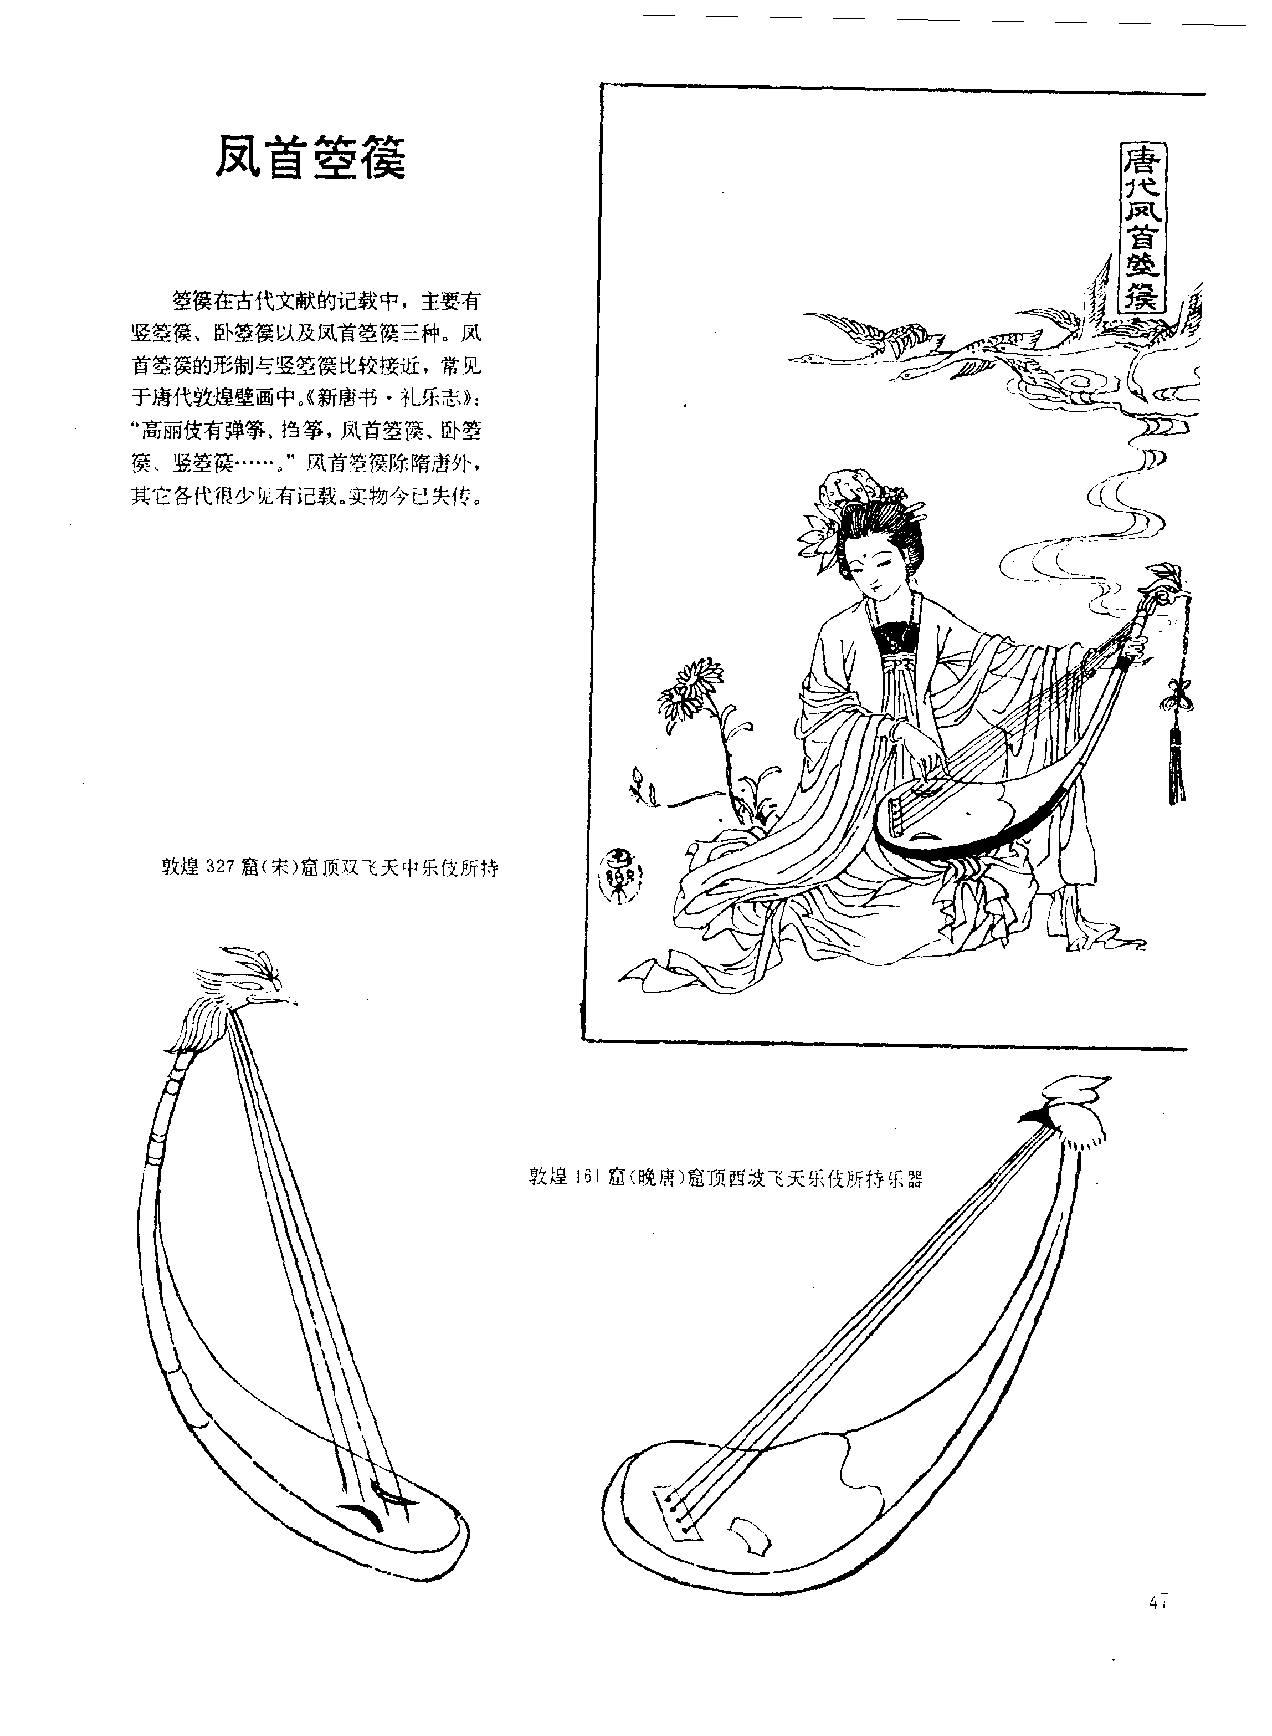 中国古代乐器《凤首箜篌》